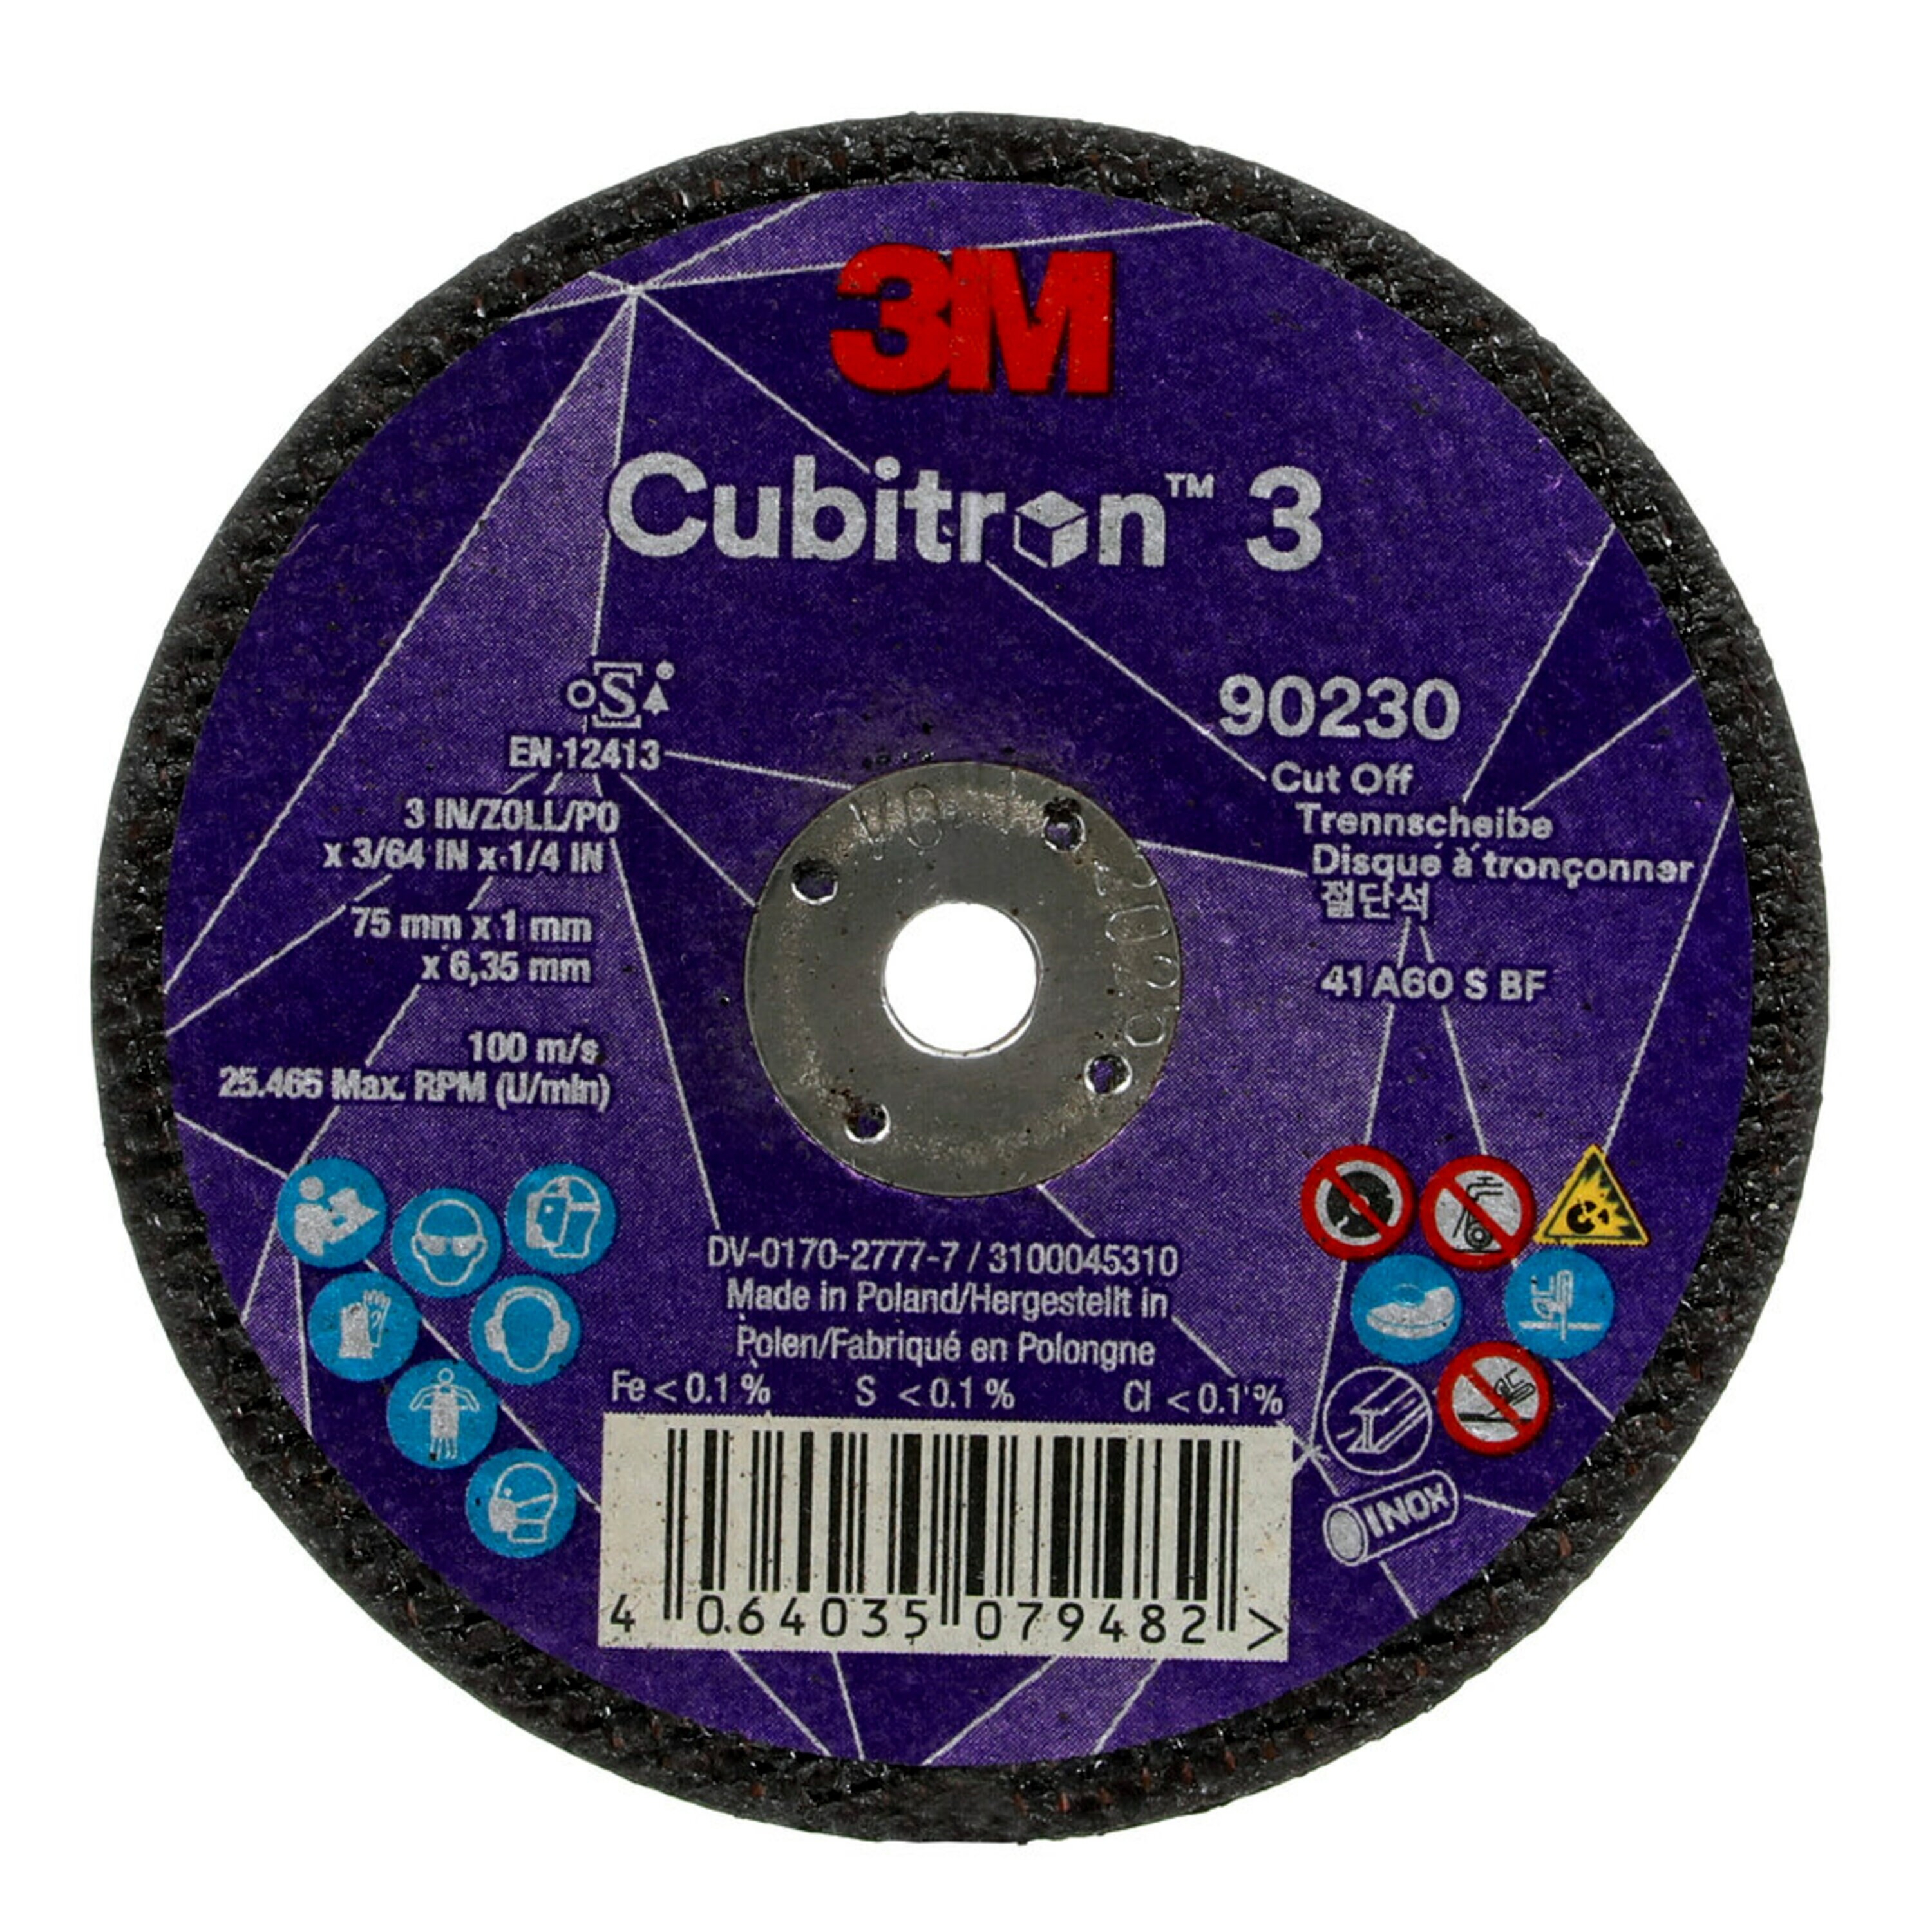 3M Cubitron 3 Disque à tronçonner, 75 mm, 1 mm, 6,35 mm, 60+, type 41 #90230